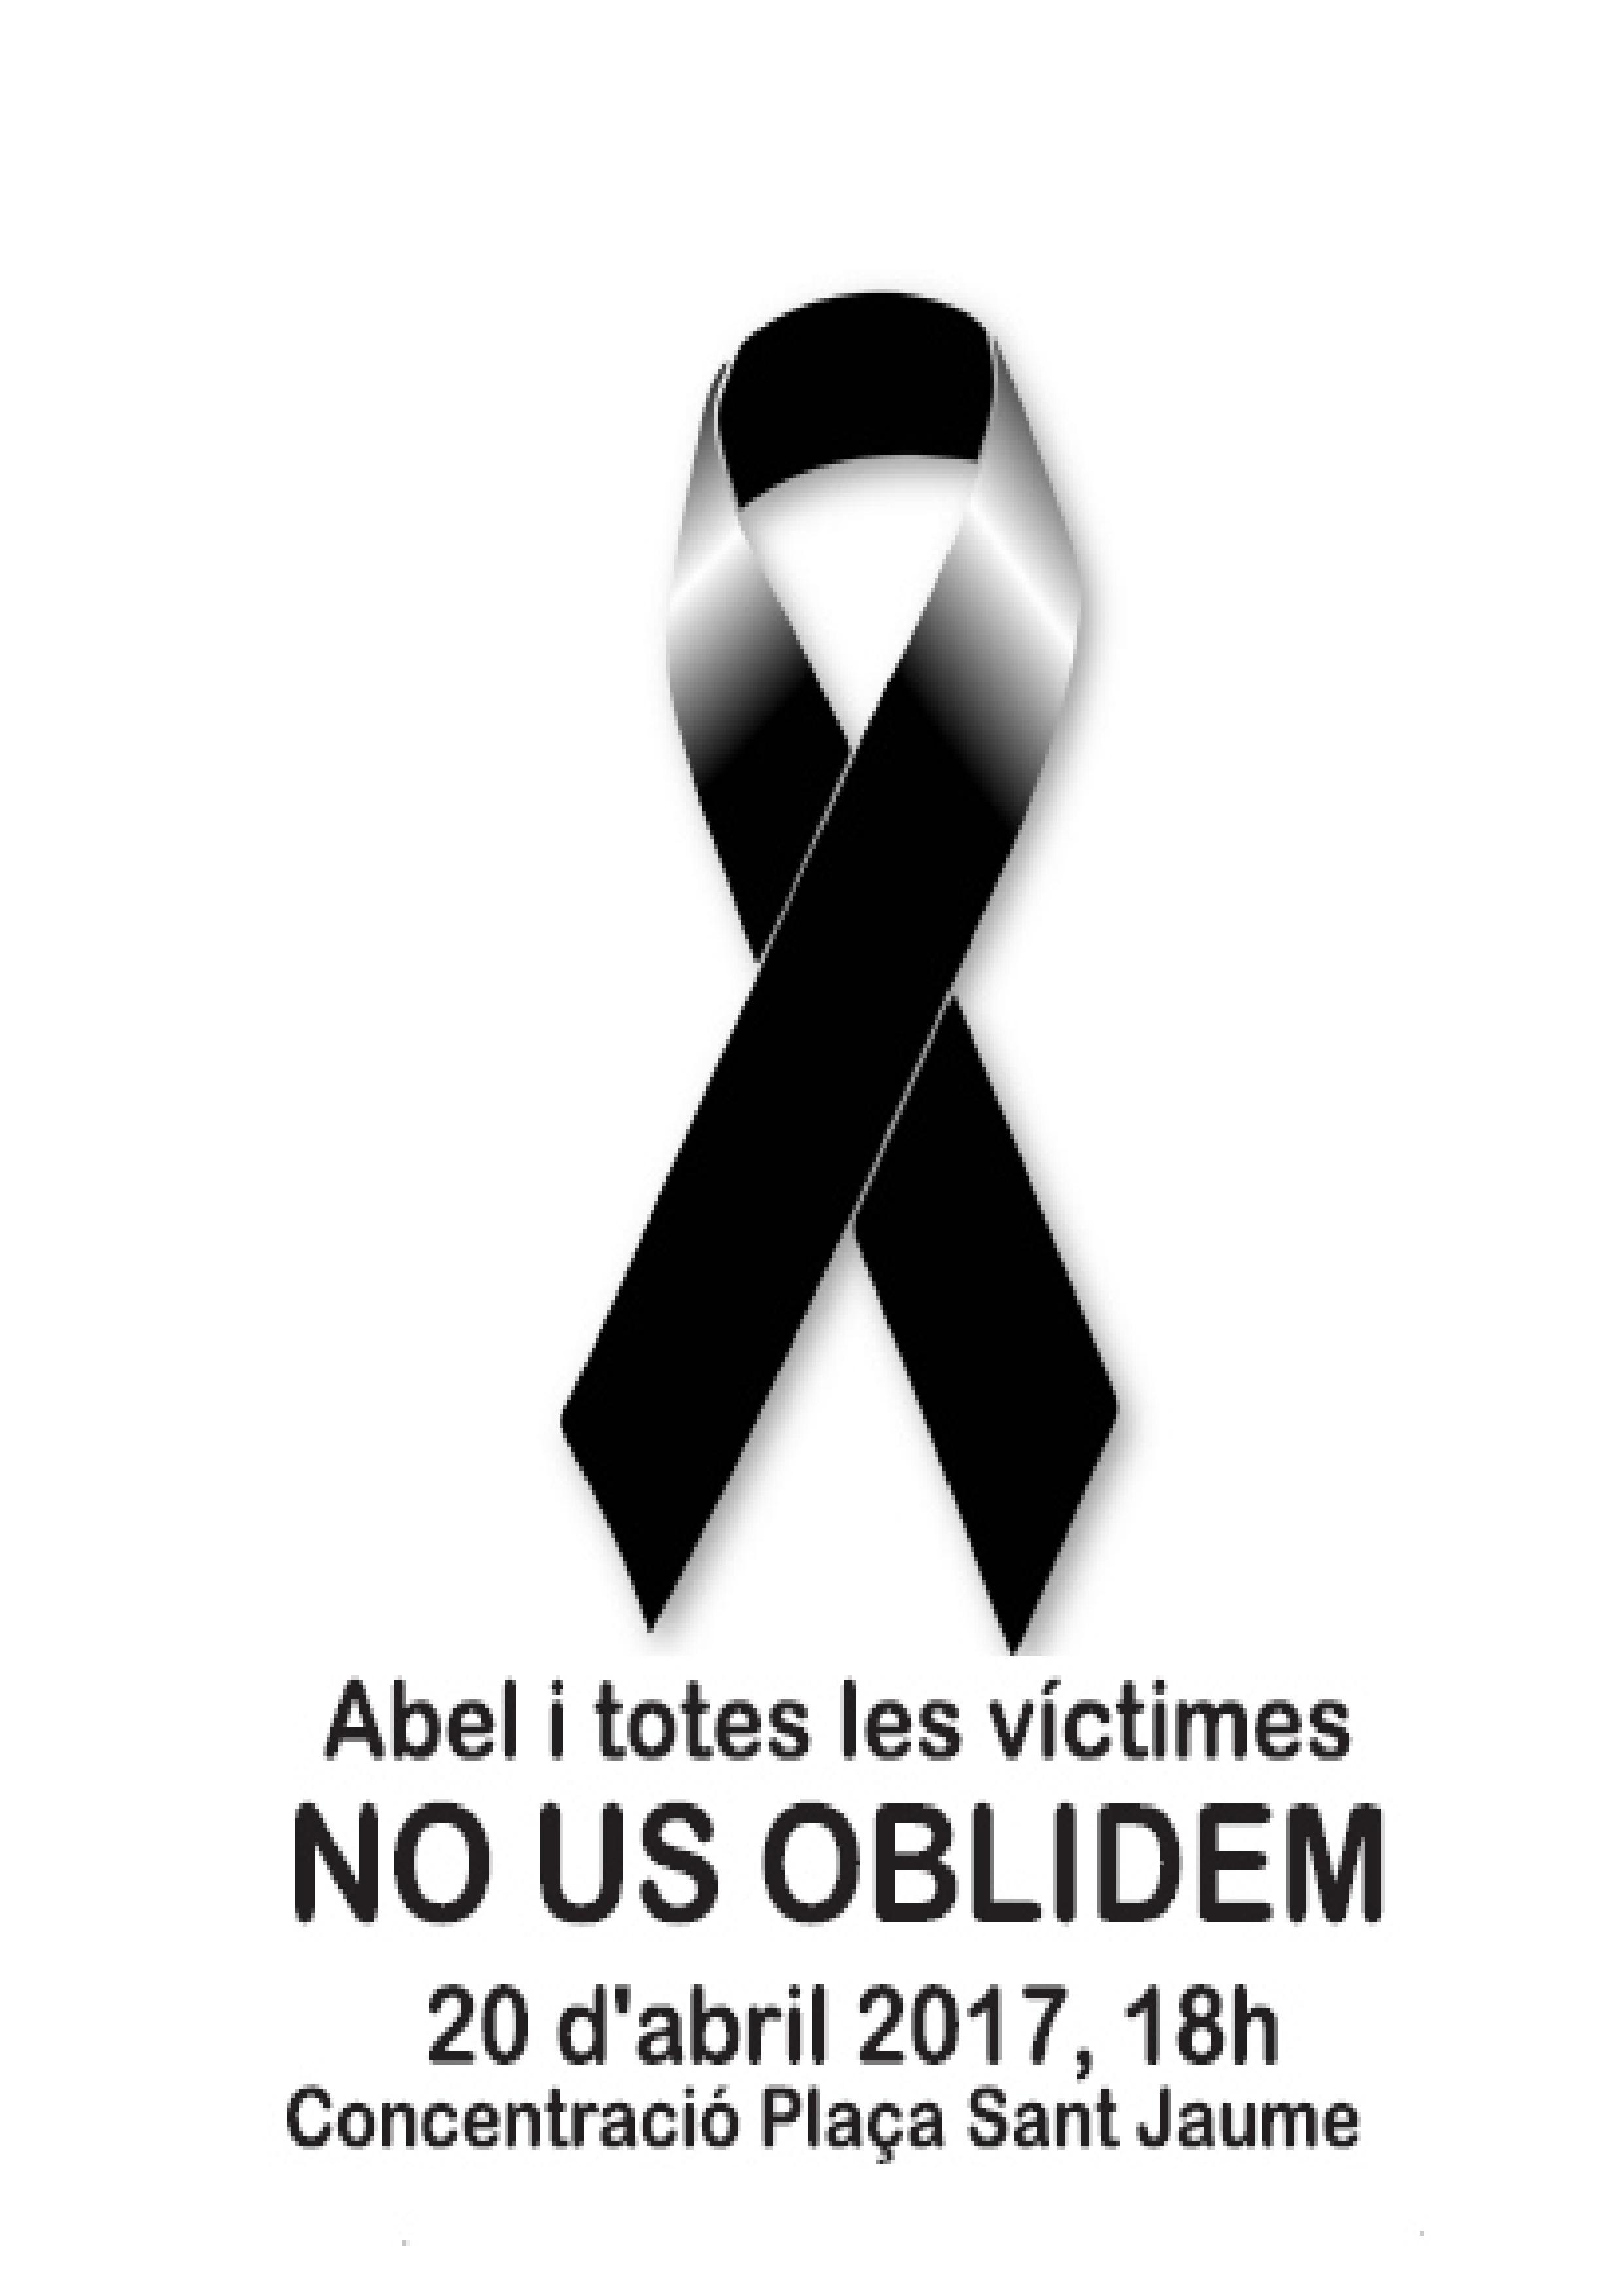 Abel i totes les victimes NO US OBLIDEM. 20 d'Abril 2017, 18h. Concentració Plaça Sant Jaume